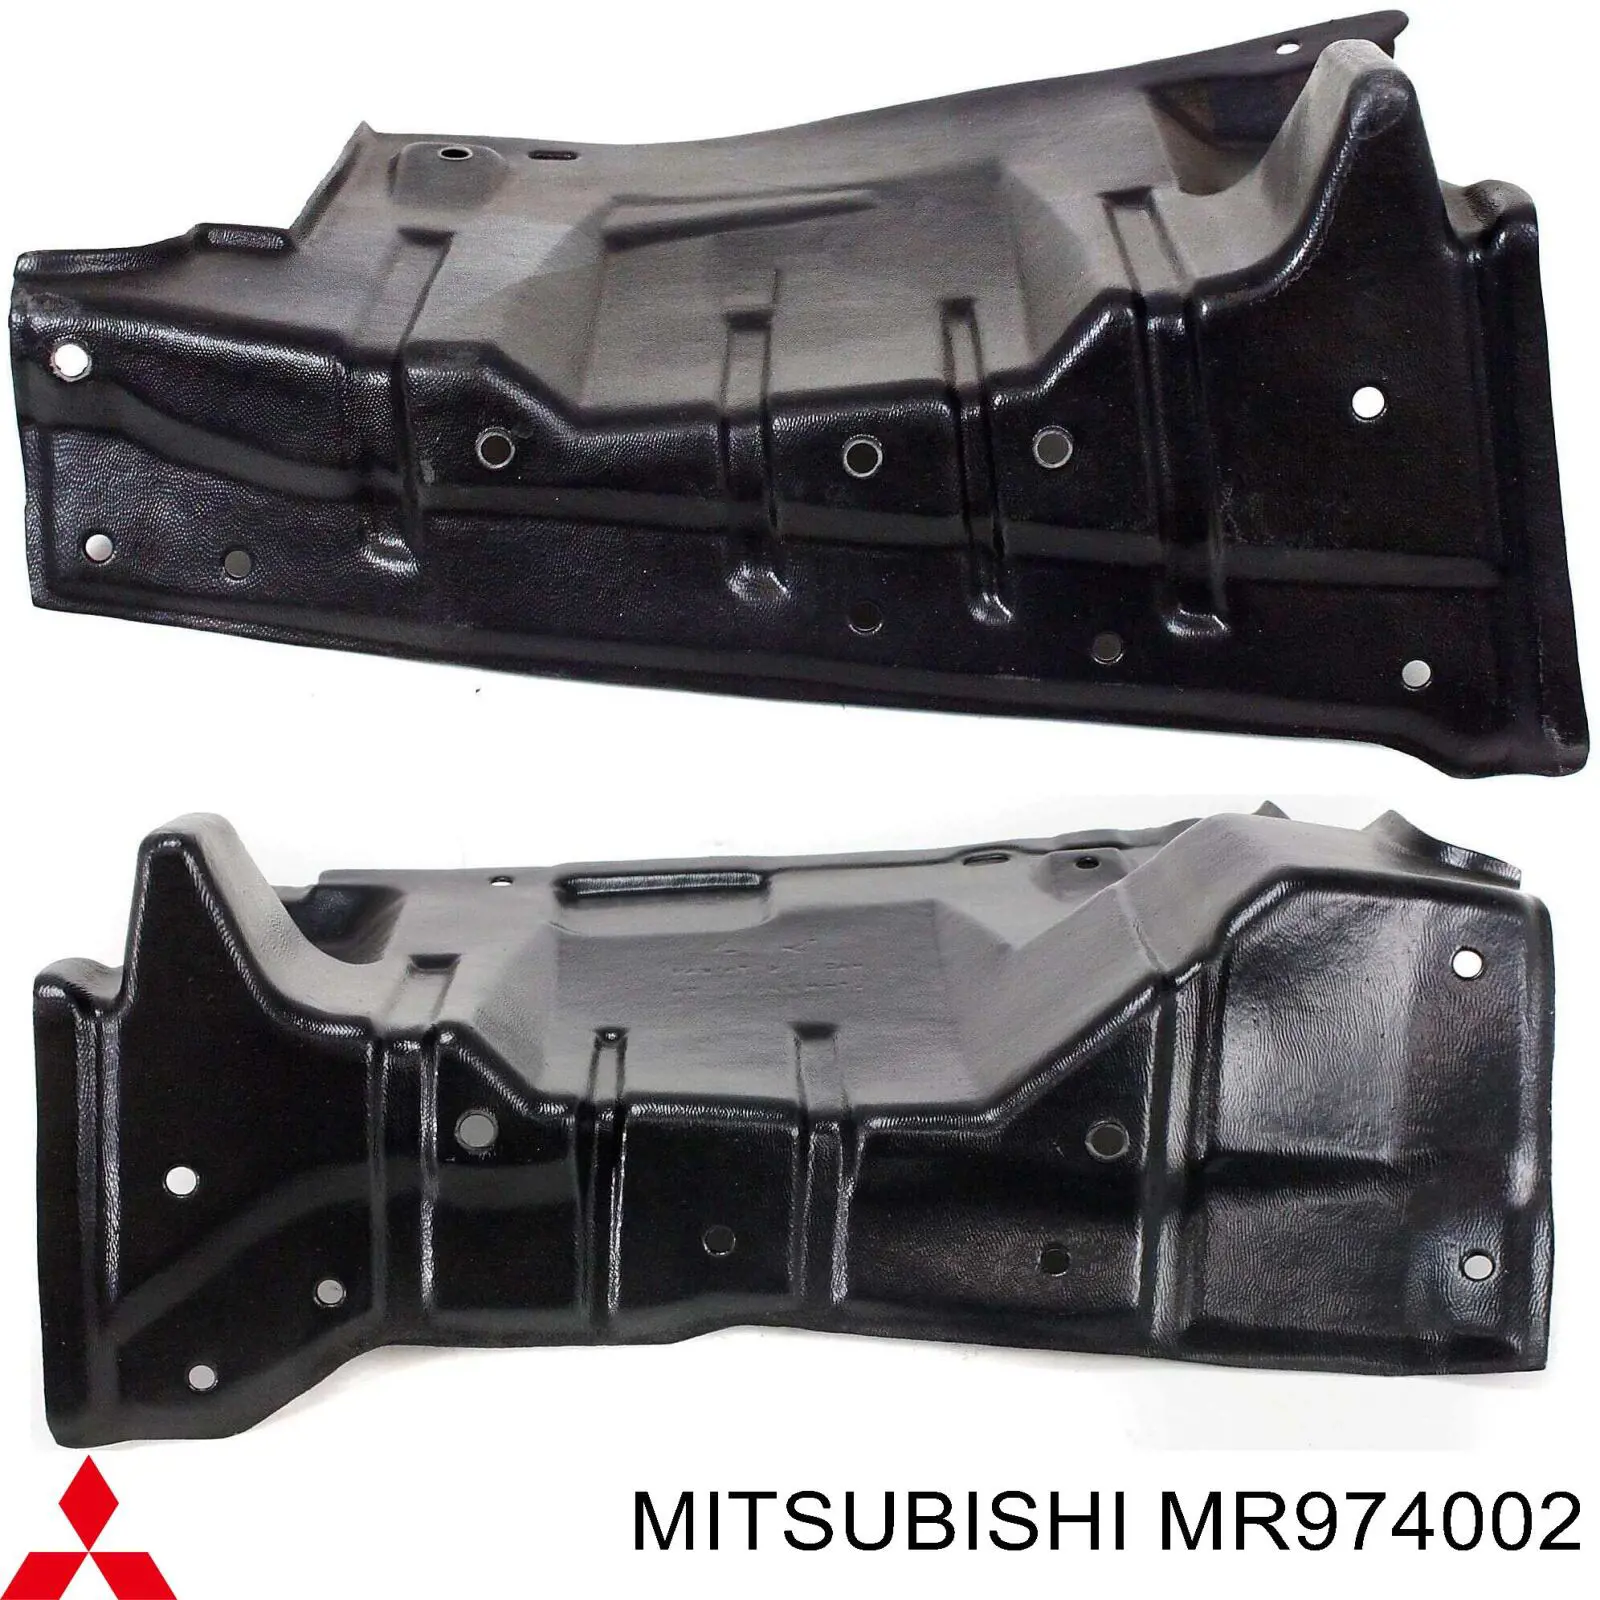 MR974002 Mitsubishi protección motor izquierda